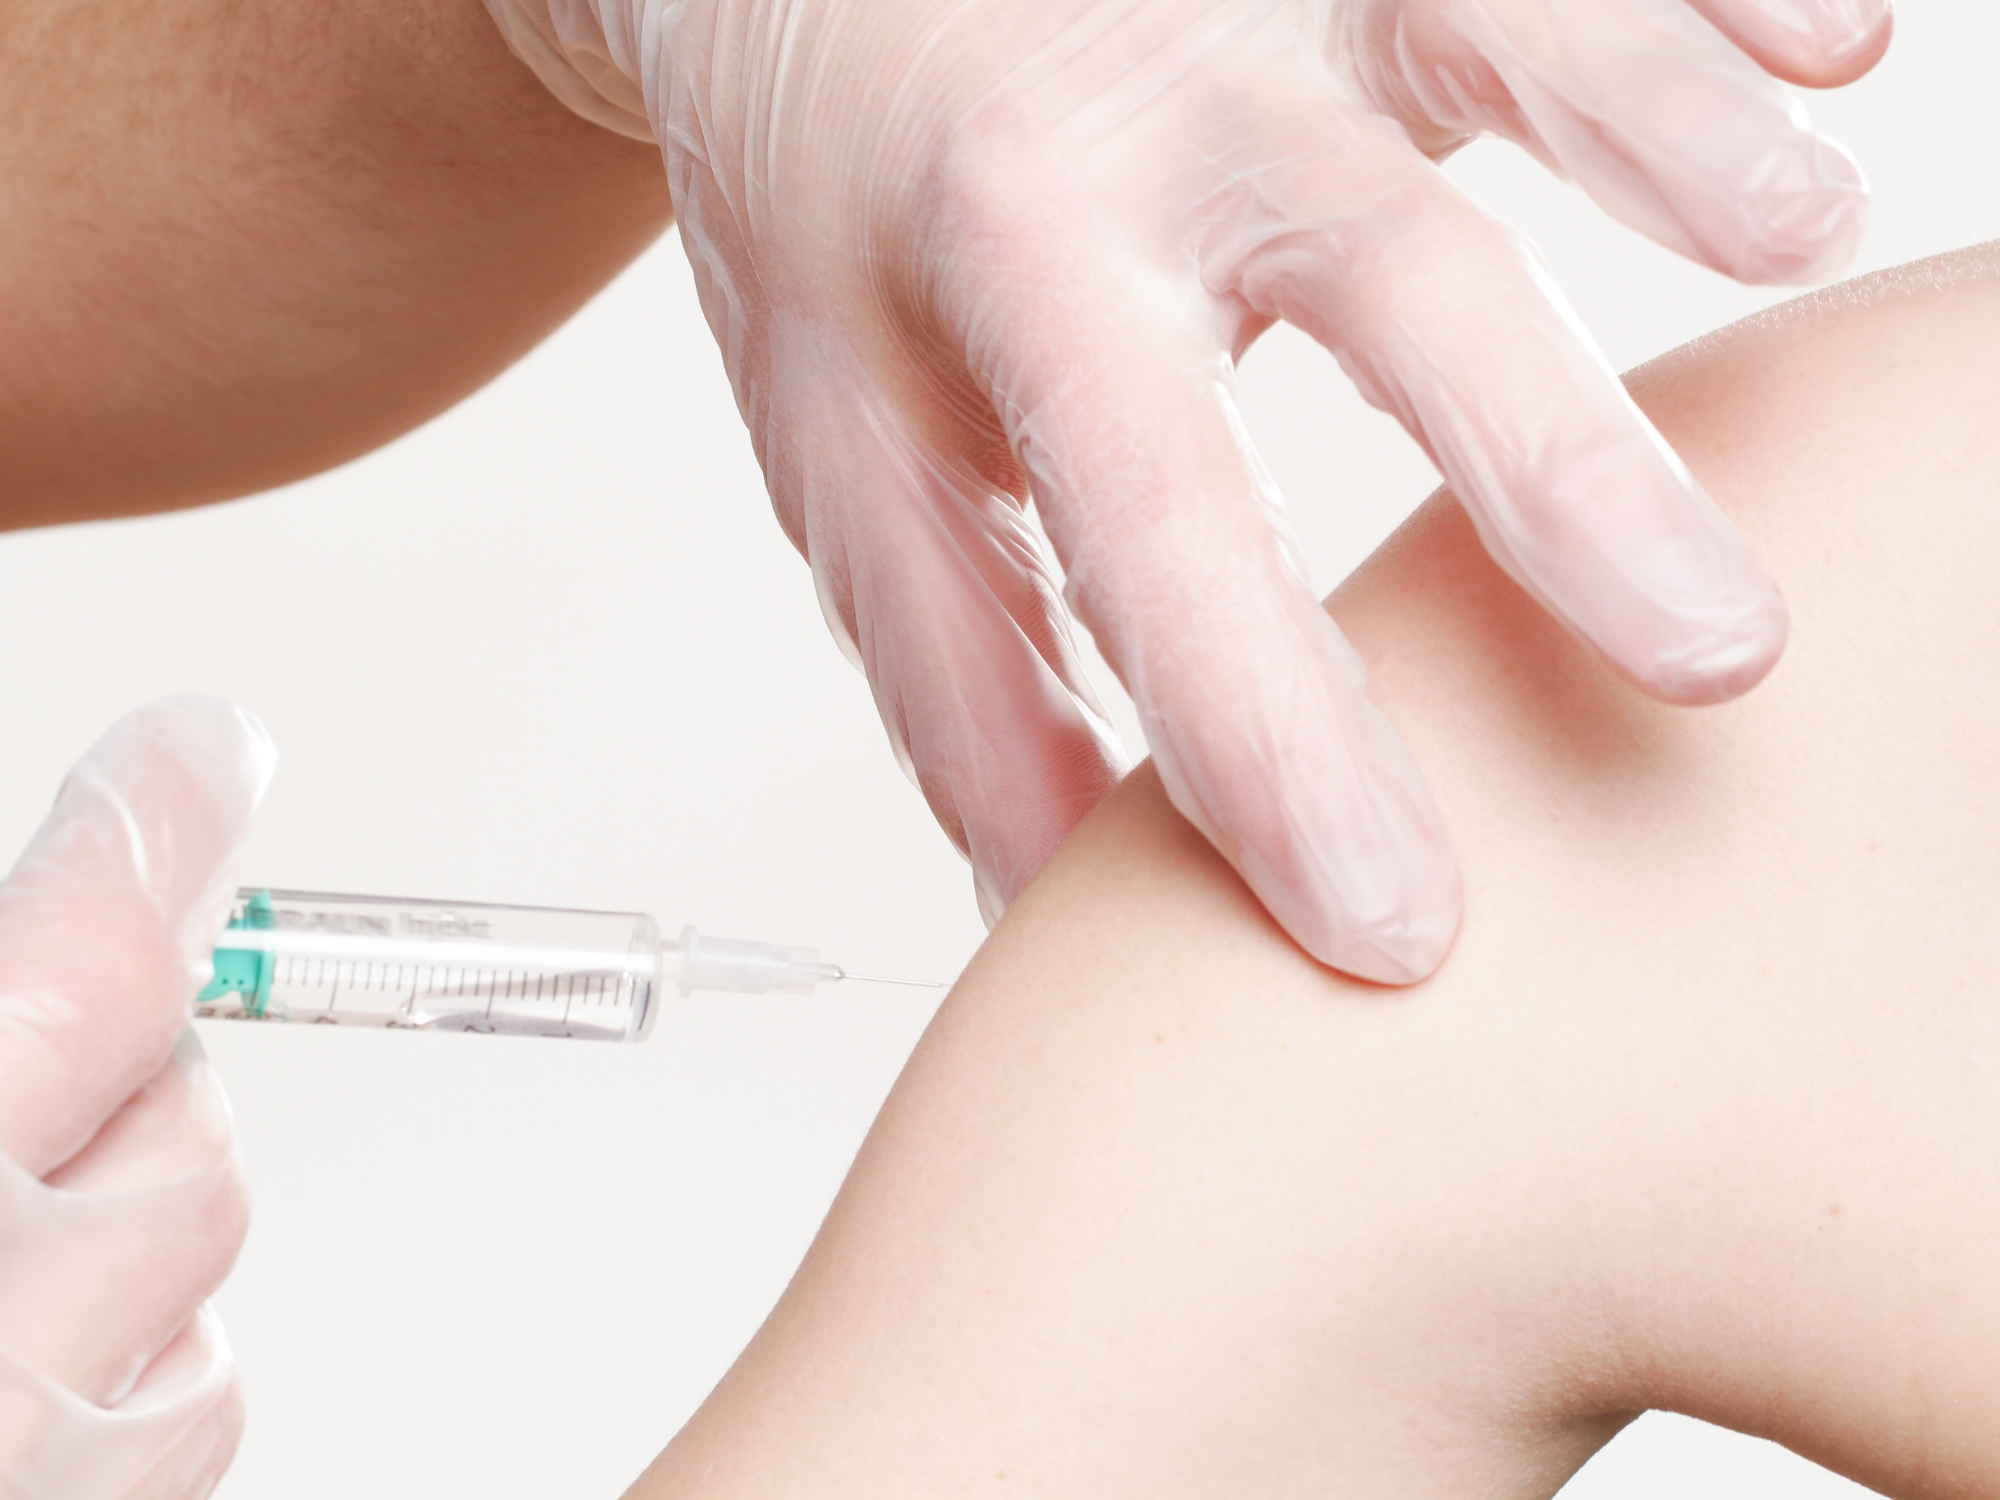 Tentantes: possíveis pontos positivos e negativos da vacina contra a Covid-19